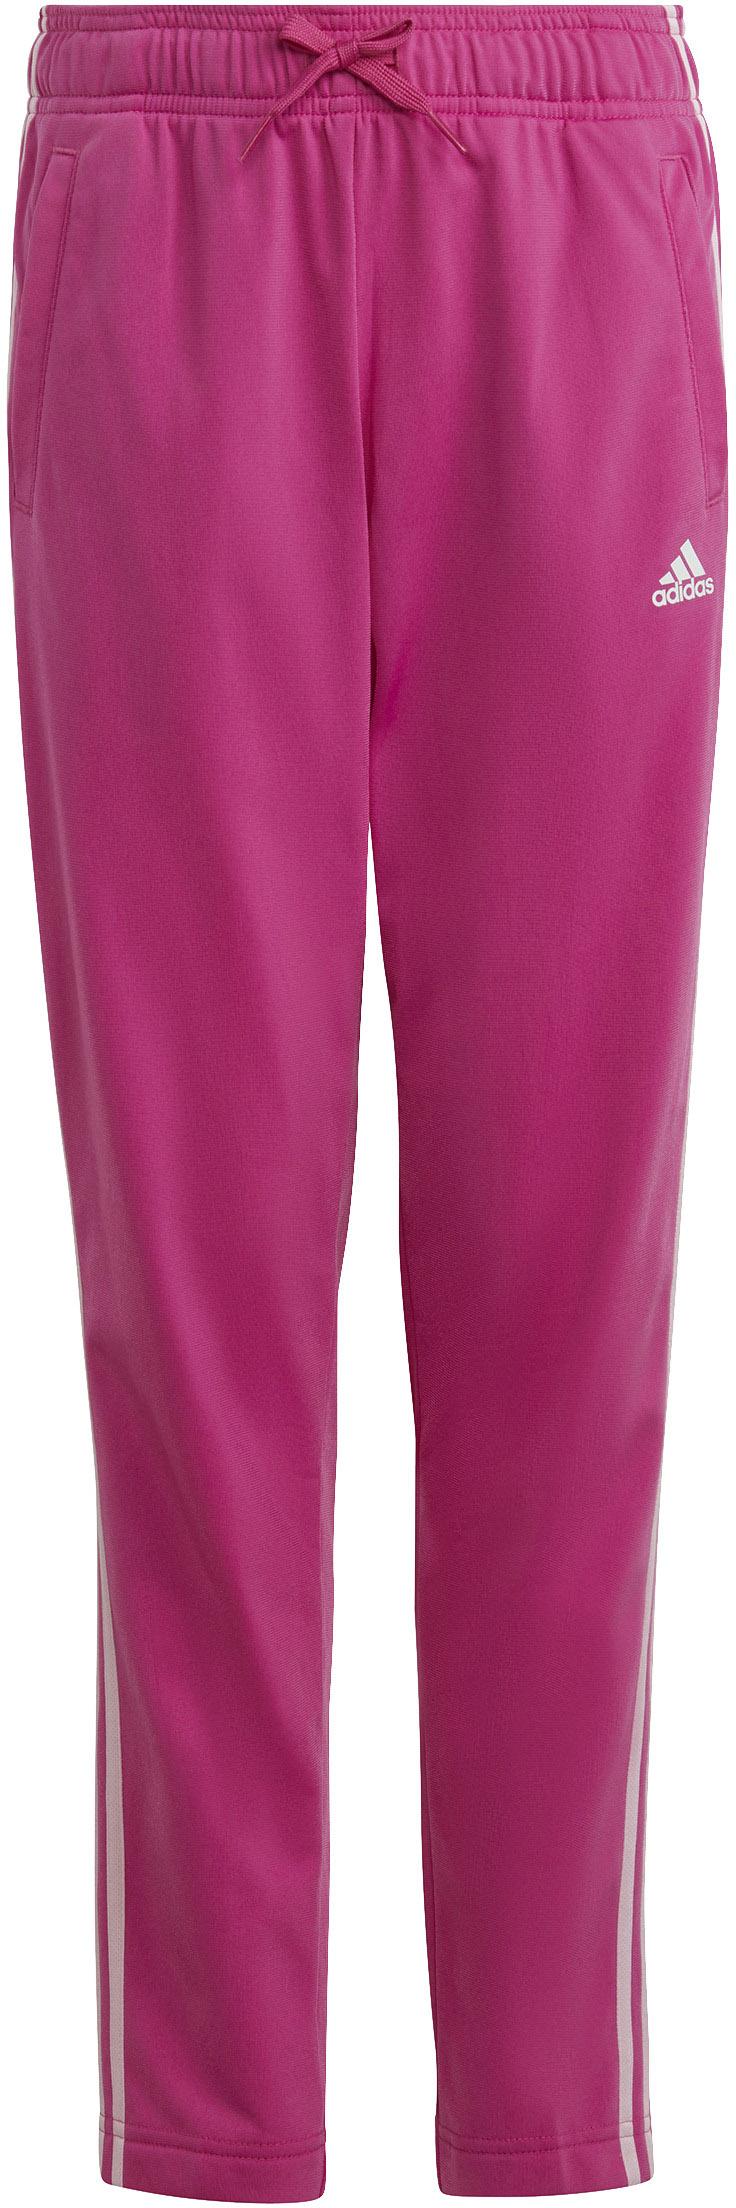 Adidas Trainingsanzug Mädchen clear kaufen fuchsia-white Shop von pink-semi im Online lucid SportScheck